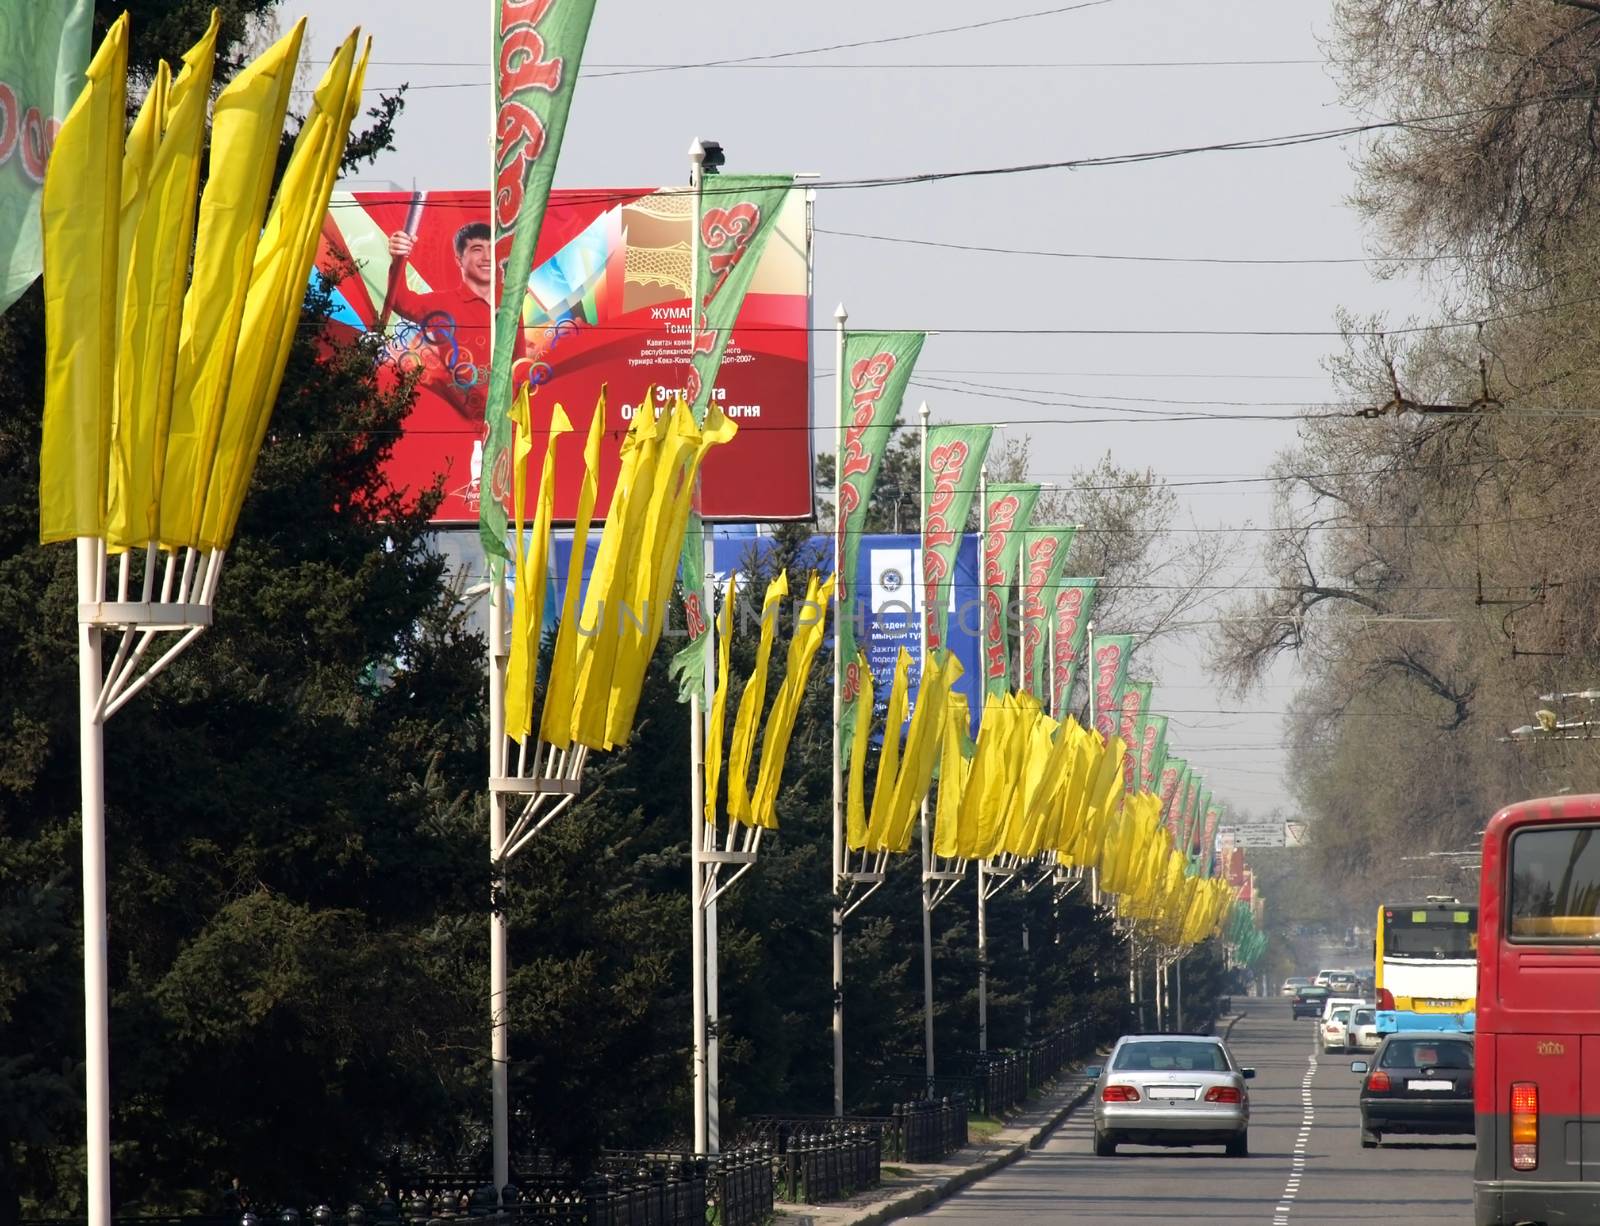 Busy street in Almaty. Kazakhstan.